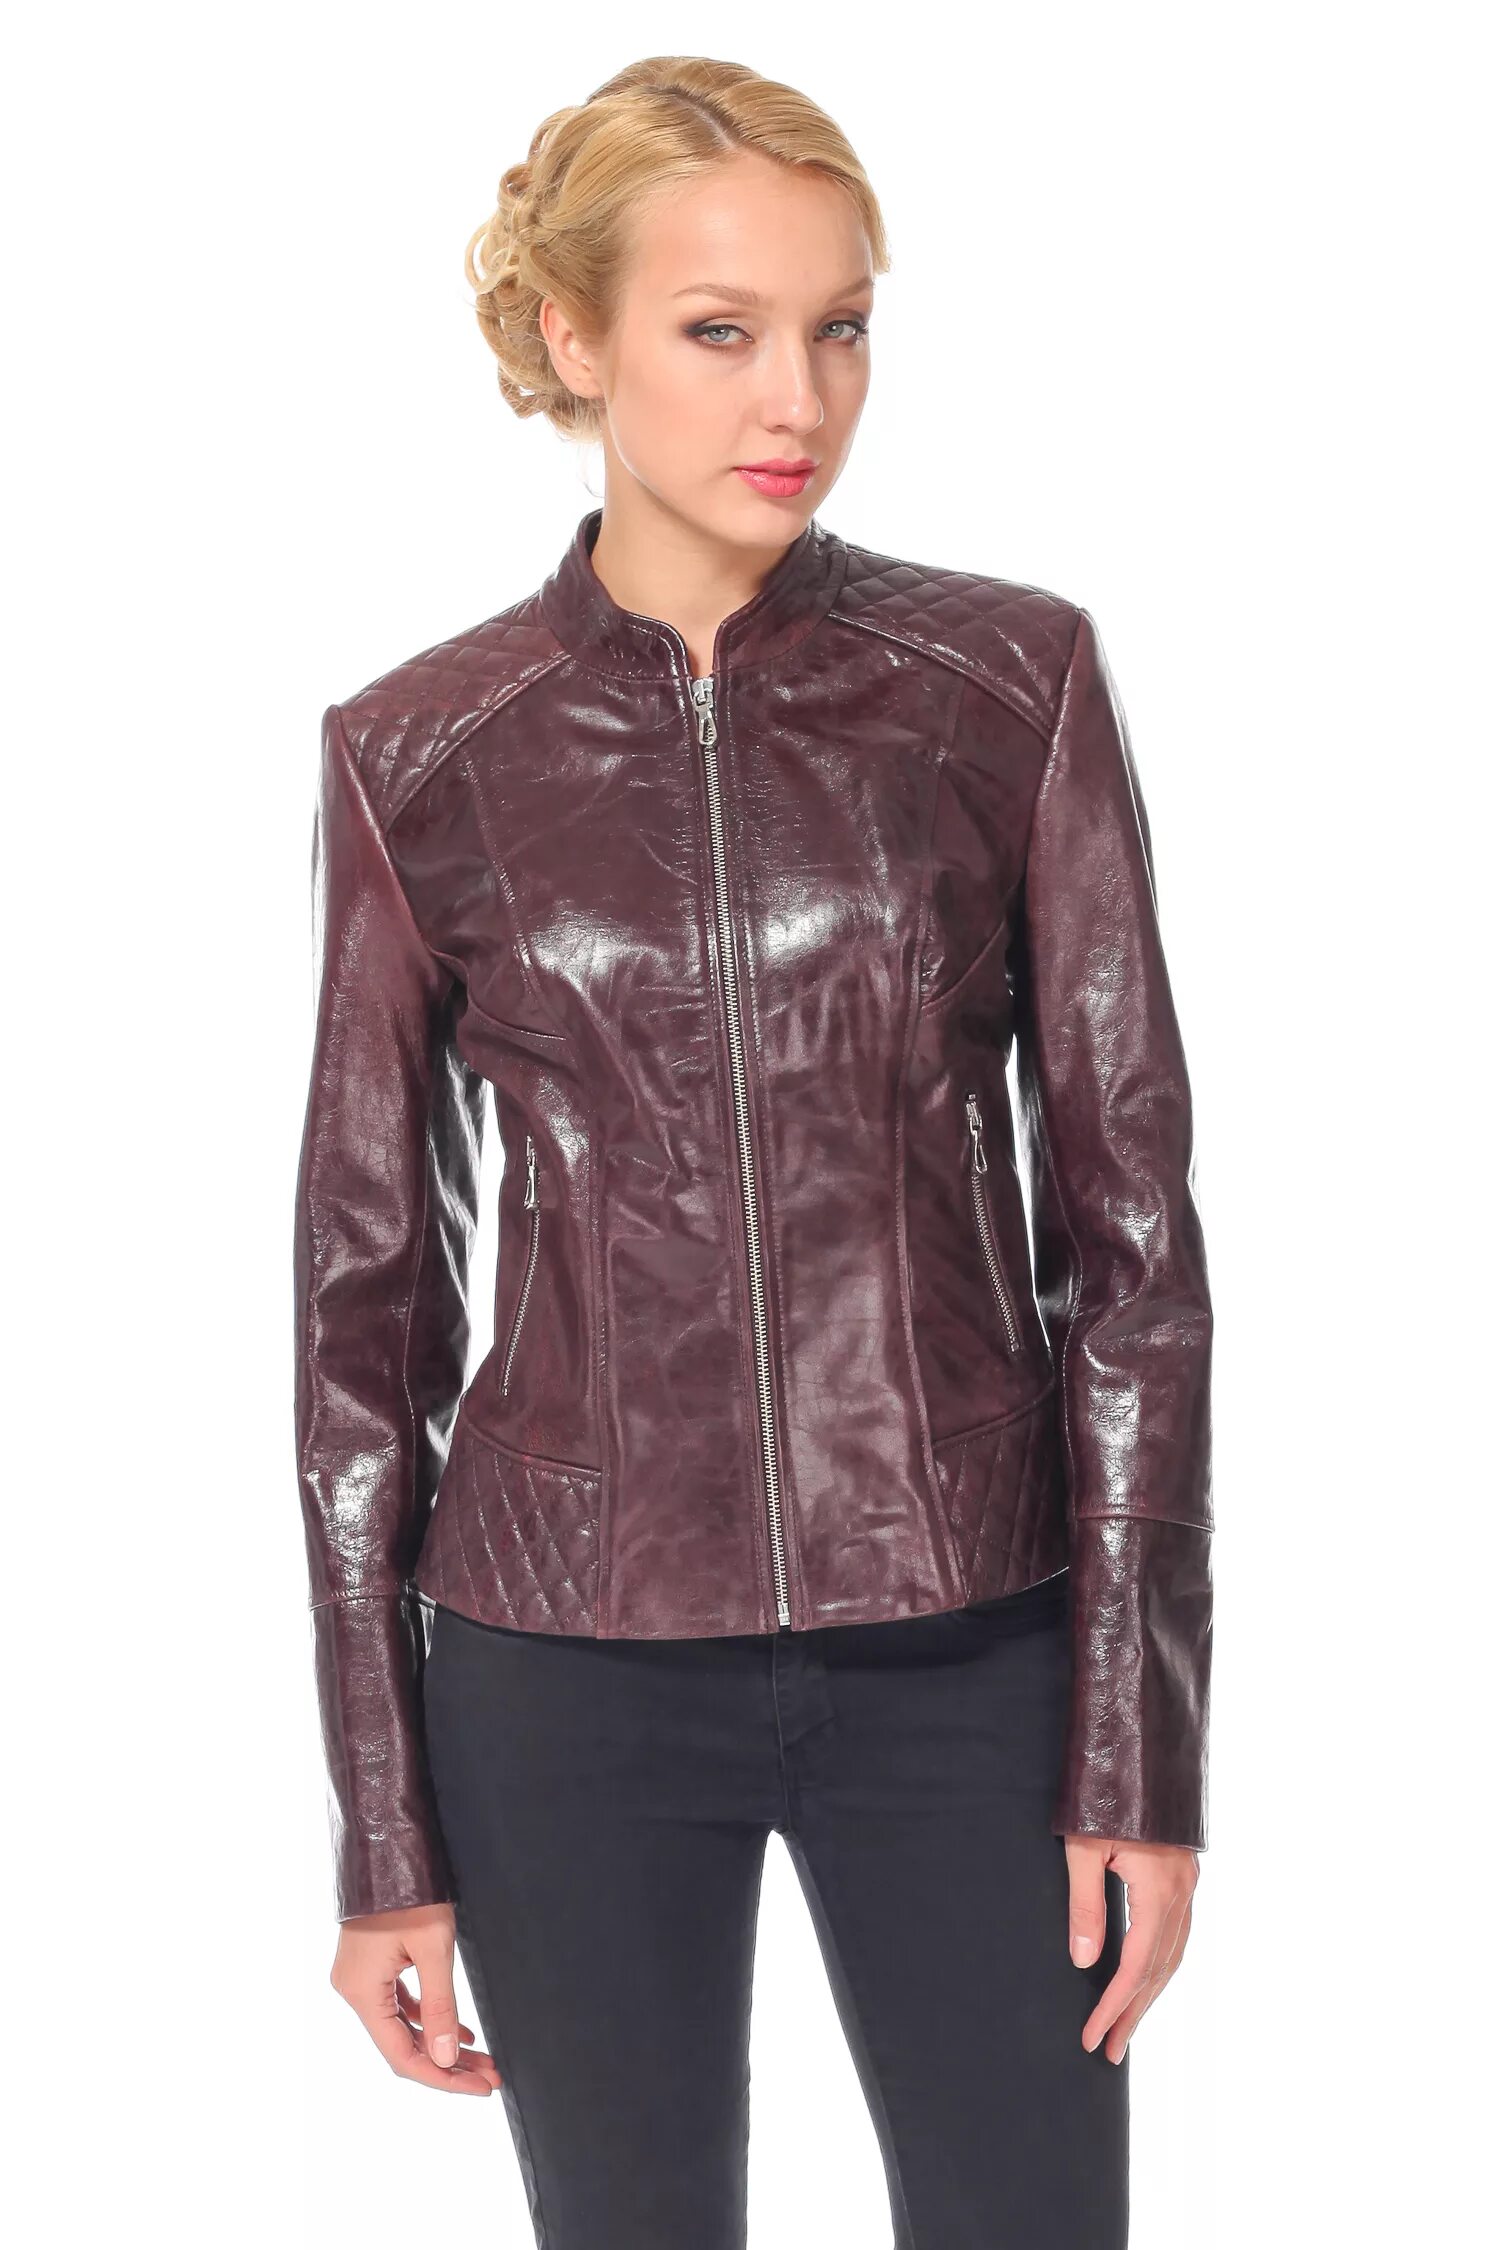 Кожаные куртки из телячьей кожи женские. Турецкие кожаные куртки женские. Куртка из телячьей кожи женская. Куртка из воловьей кожи женская.